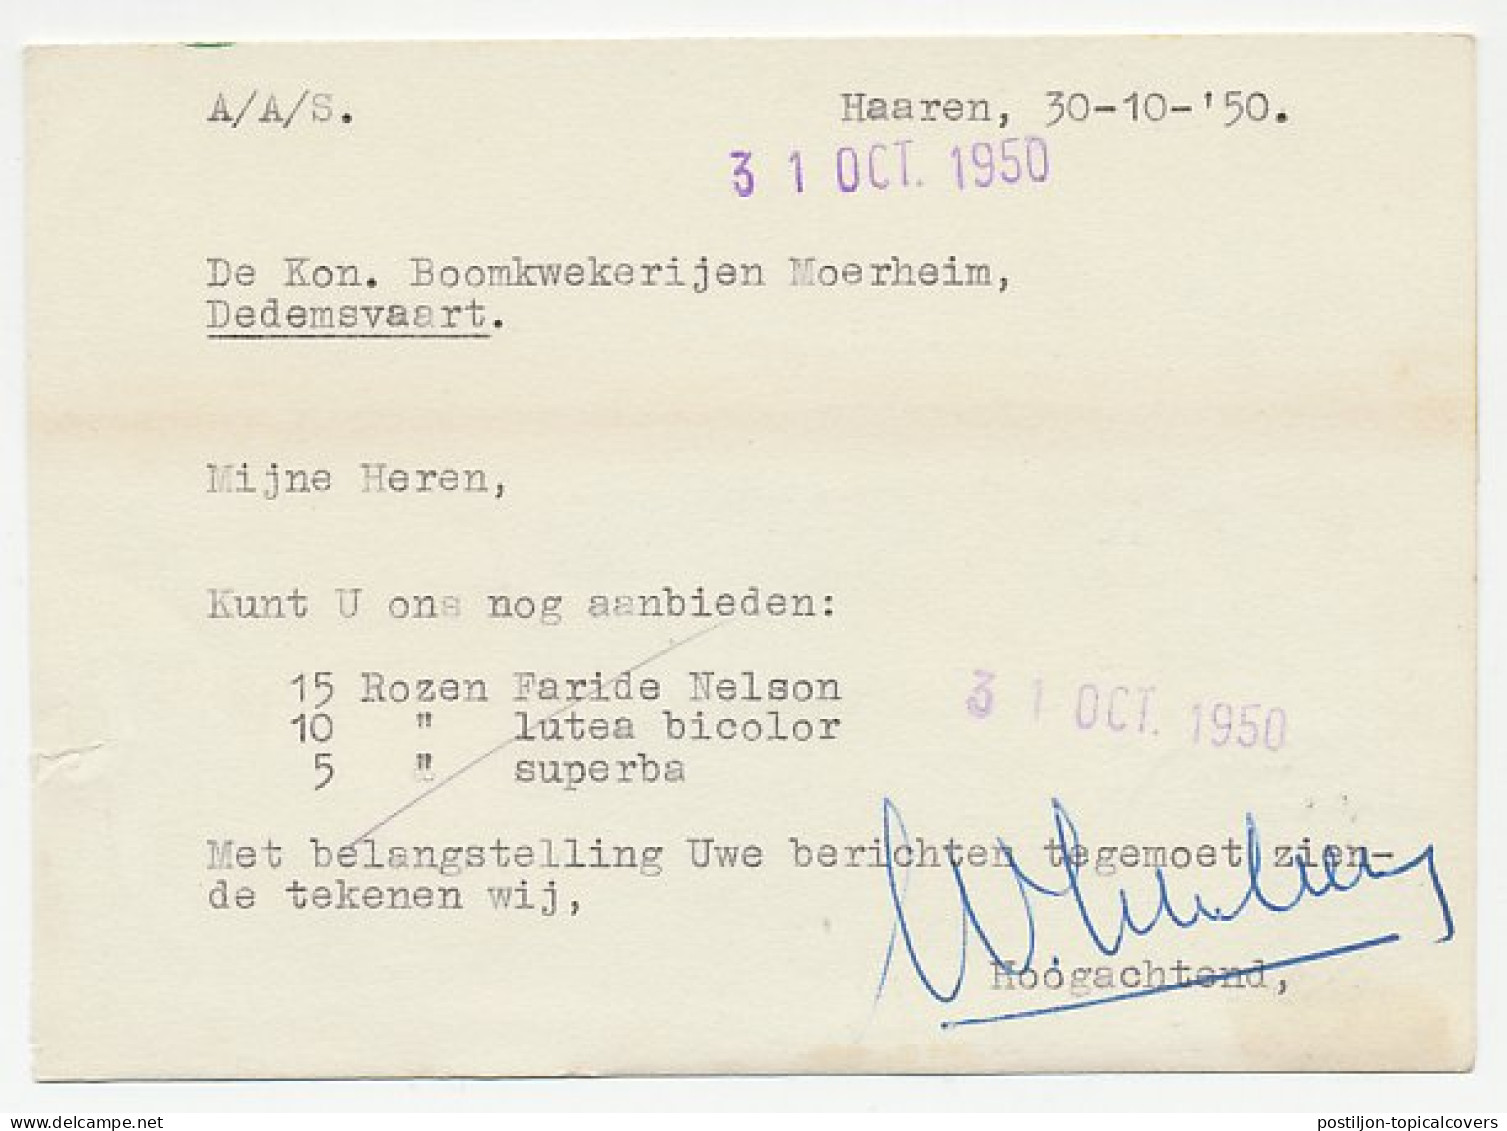 Firma Briefkaart Haaren 1950 - Boomkwekerij - Unclassified